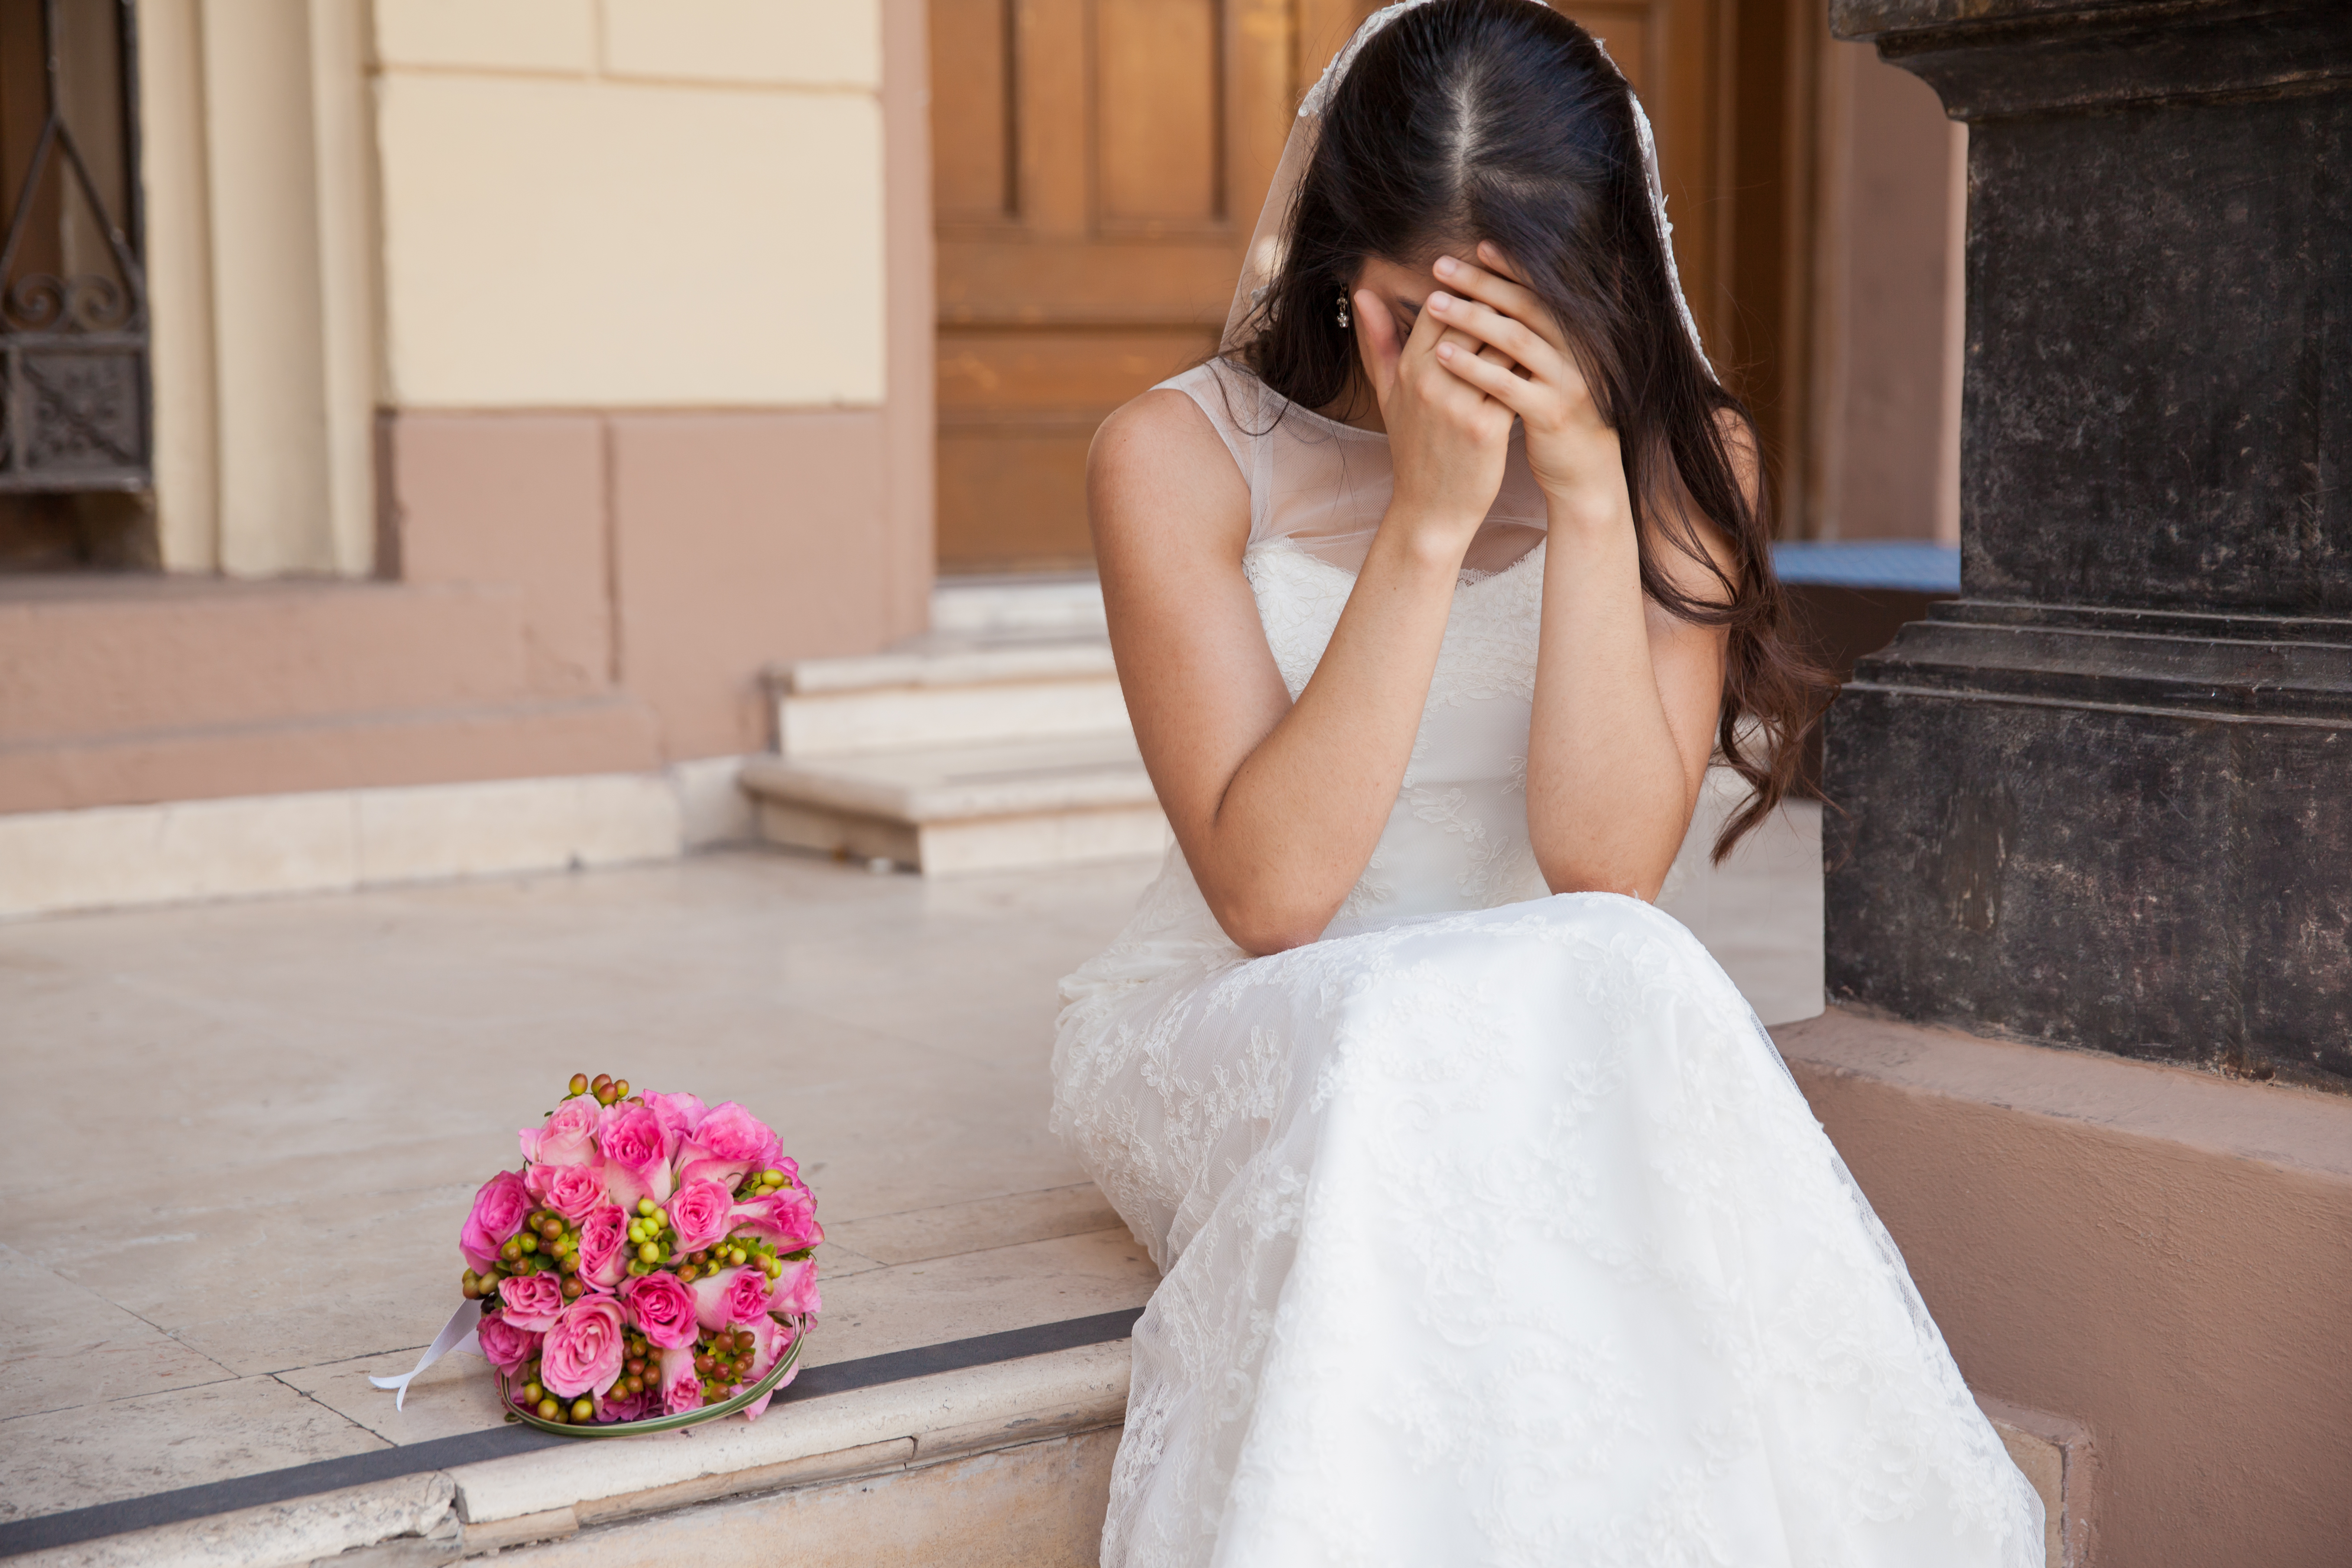 Eine traurige Braut | Quelle: Shutterstock